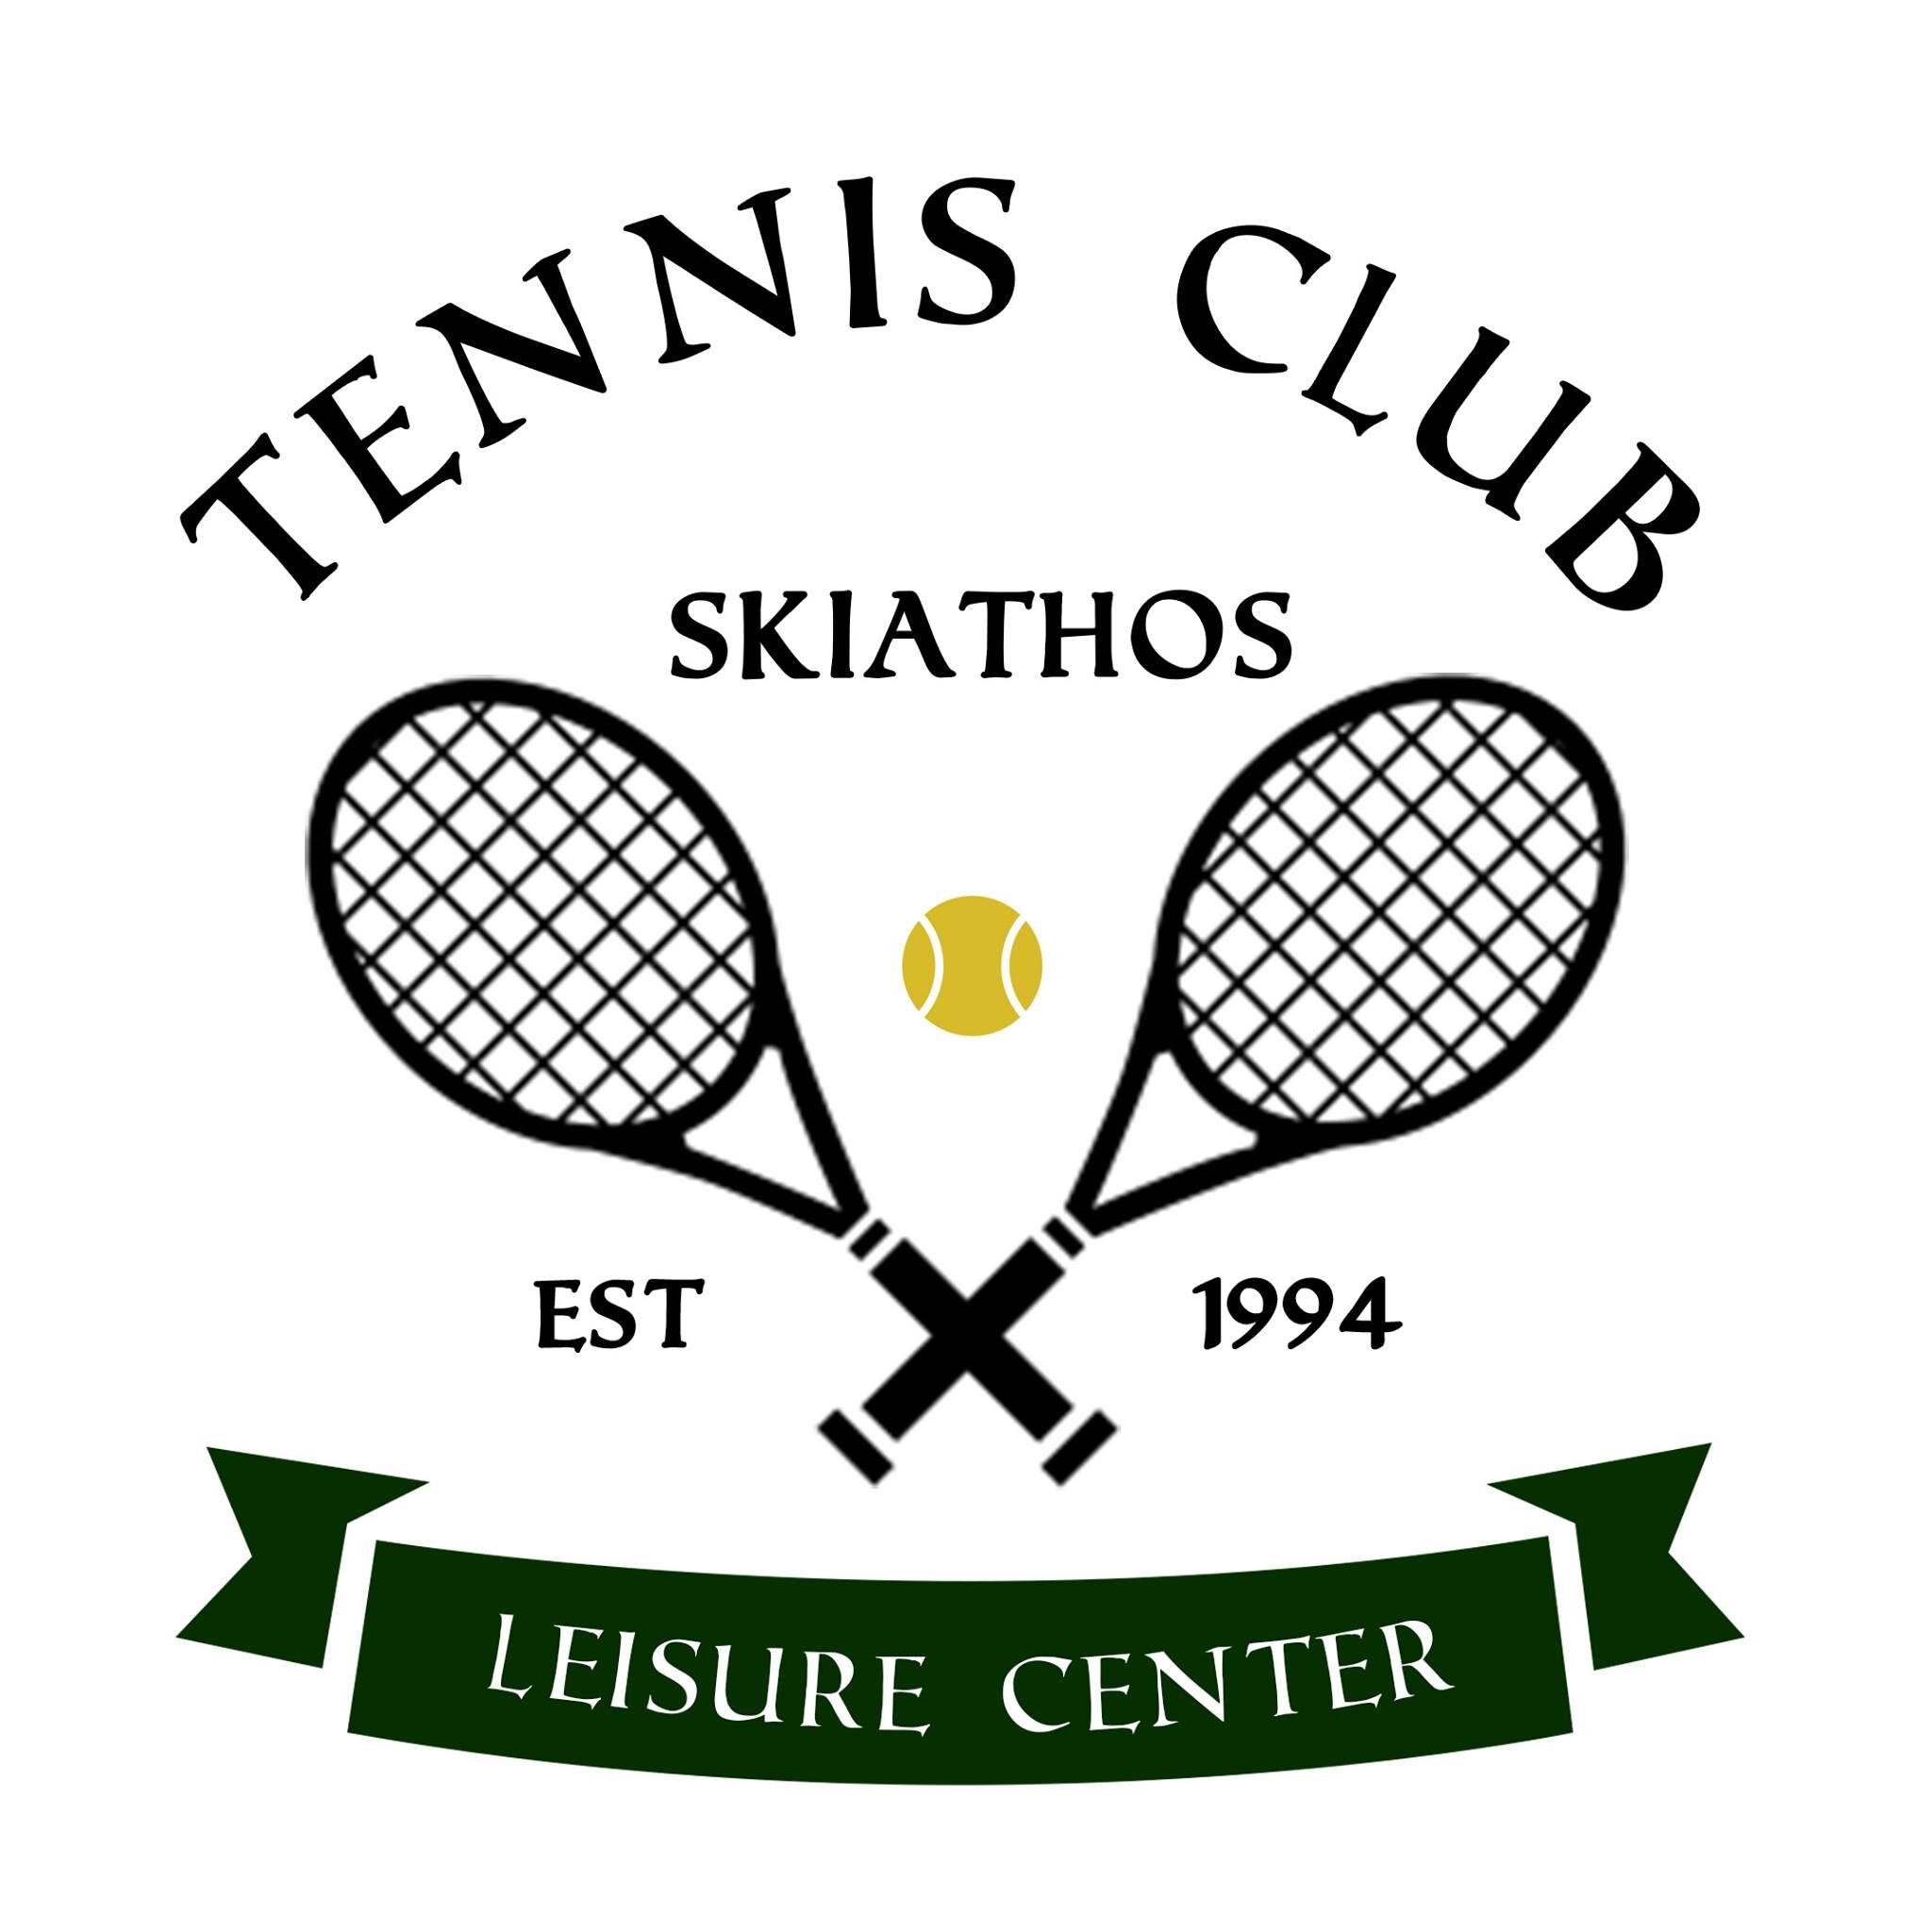 Tennis Club Skiathos | 